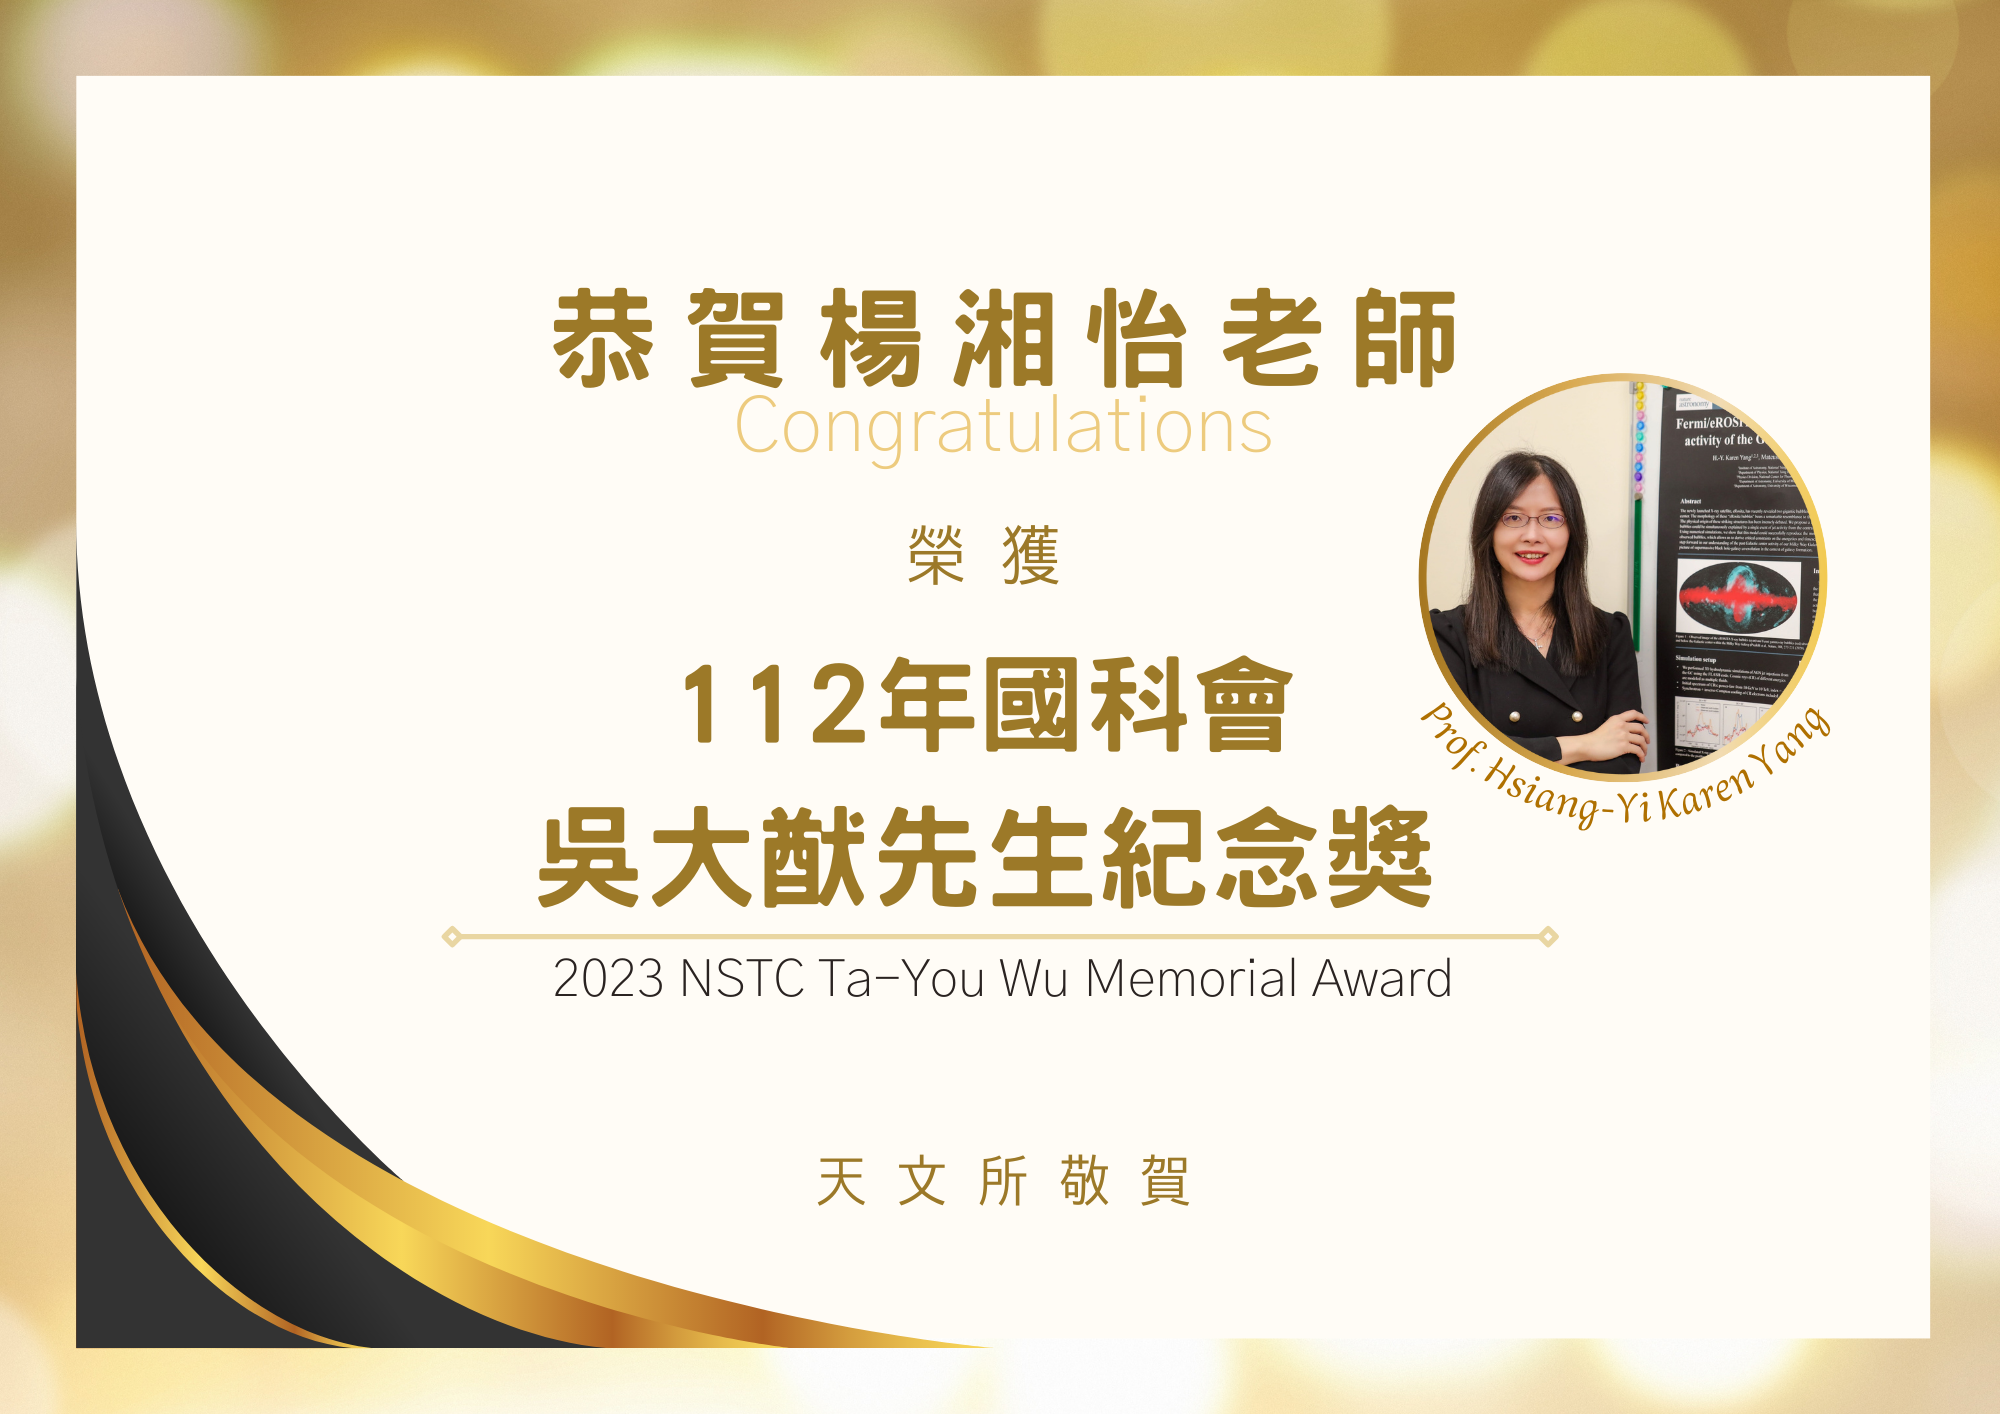 Congratulations to Prof. Hsiang-Yi Karen Yang, recipient of 2023 NSTC Ta-You Wu Memorial Award